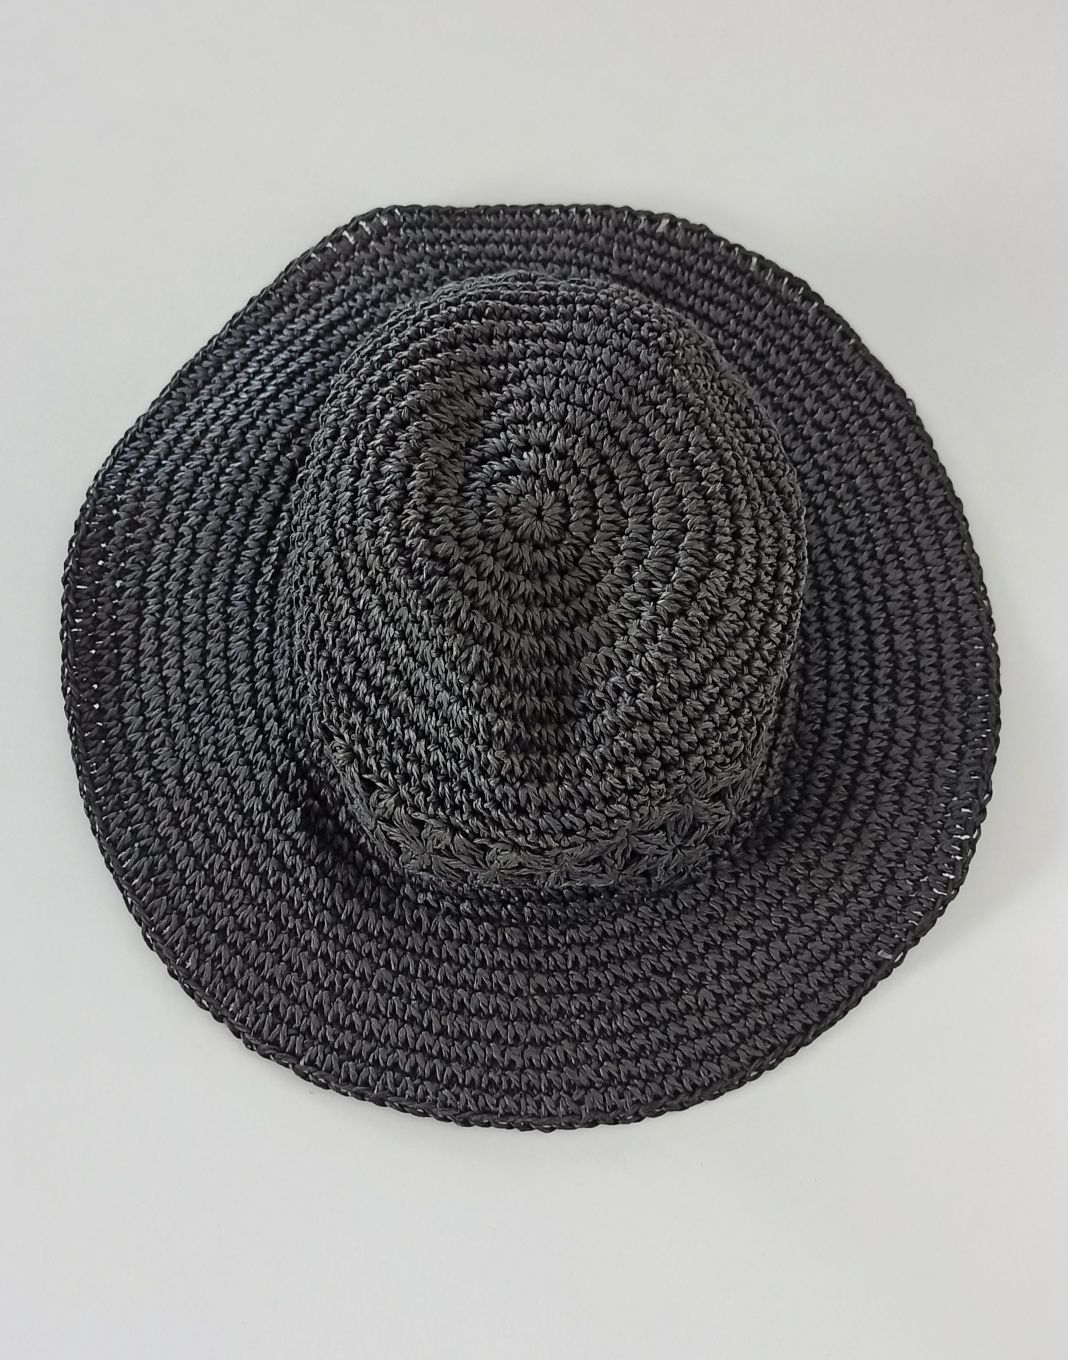 H&M kapelusz czarny papierowy słomiany pleciony lekki